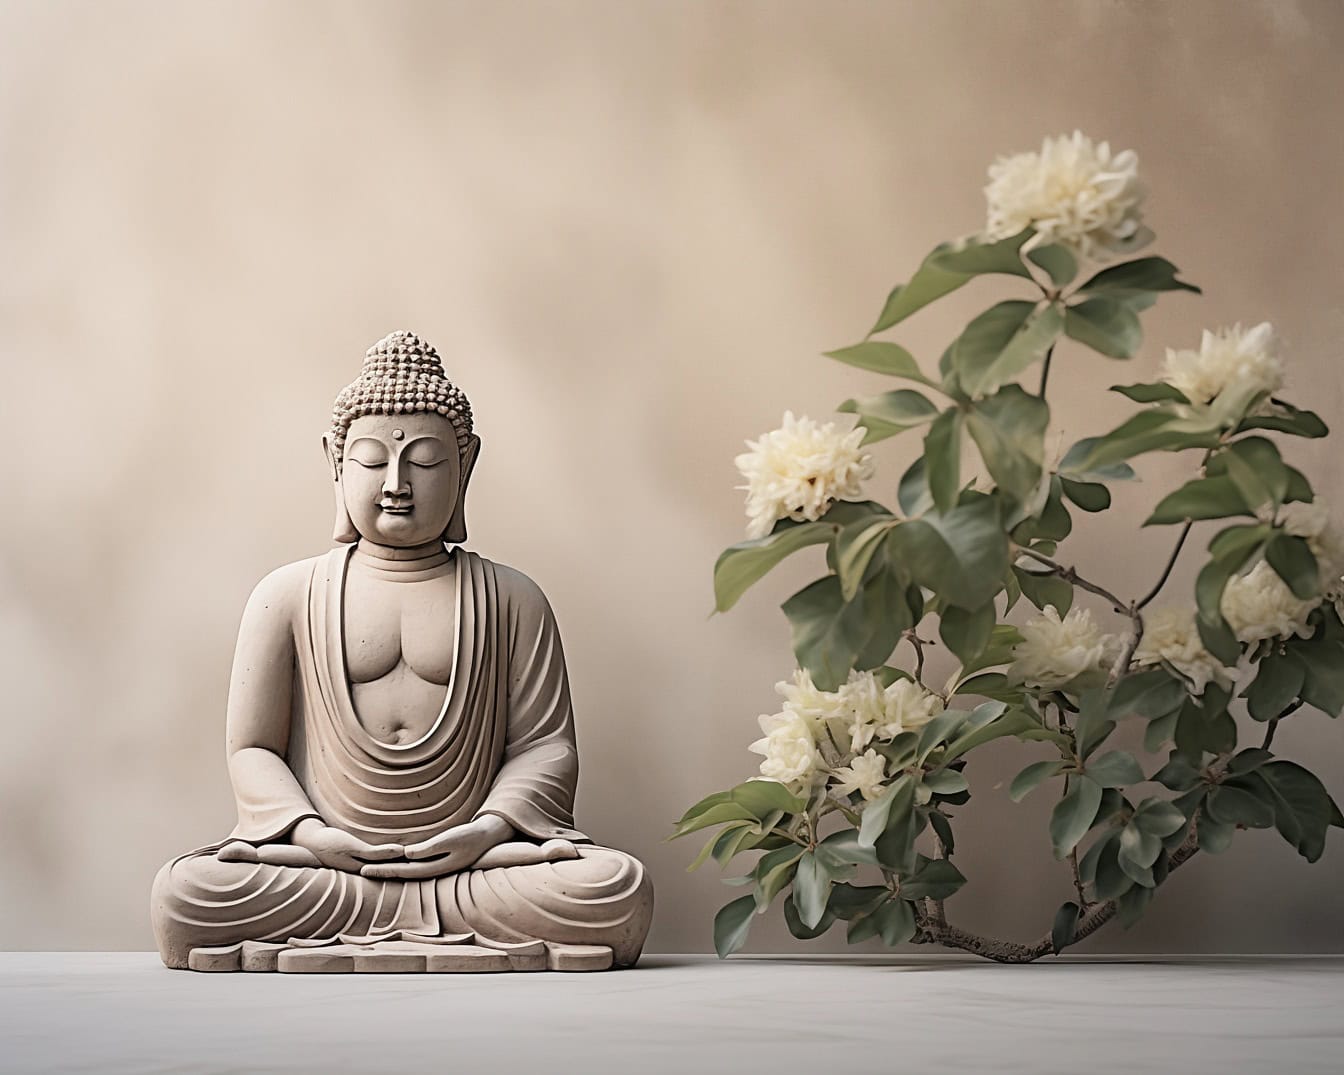 Estatua de Buda en meditación zen trascendental que representa la meditación como una filosofía espiritual